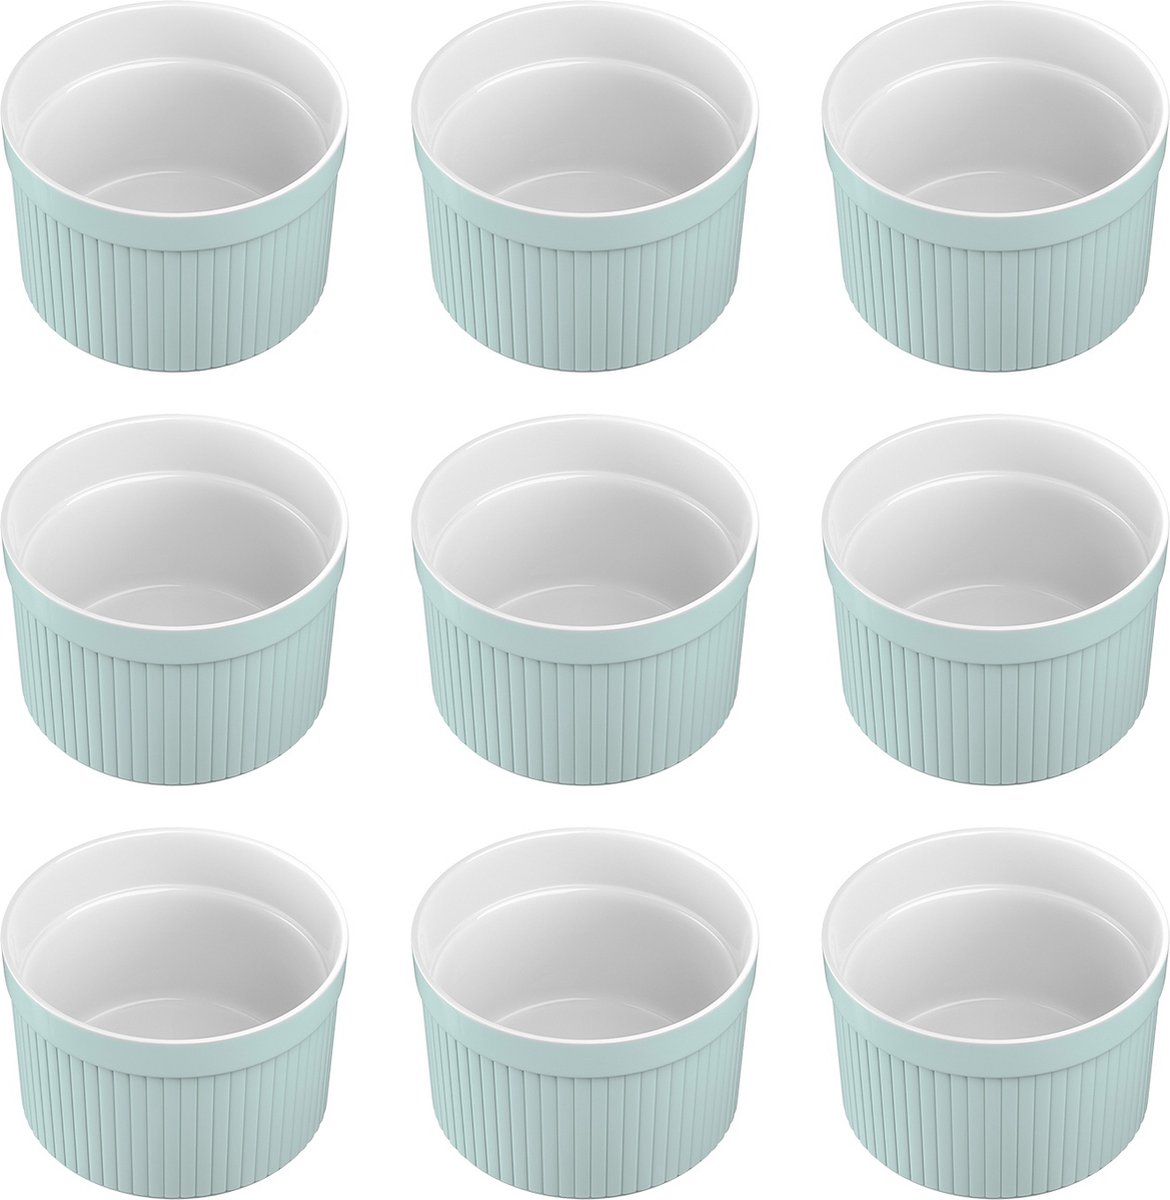 Intirilife 6-delige set Soufflévormen Bakvorm van porselein in Lichtblauw met afmetingen van 7.8 x 4.6 cm - Om dessert, fruit of fruit porties, muffins, cupcakes, taart te bereiden